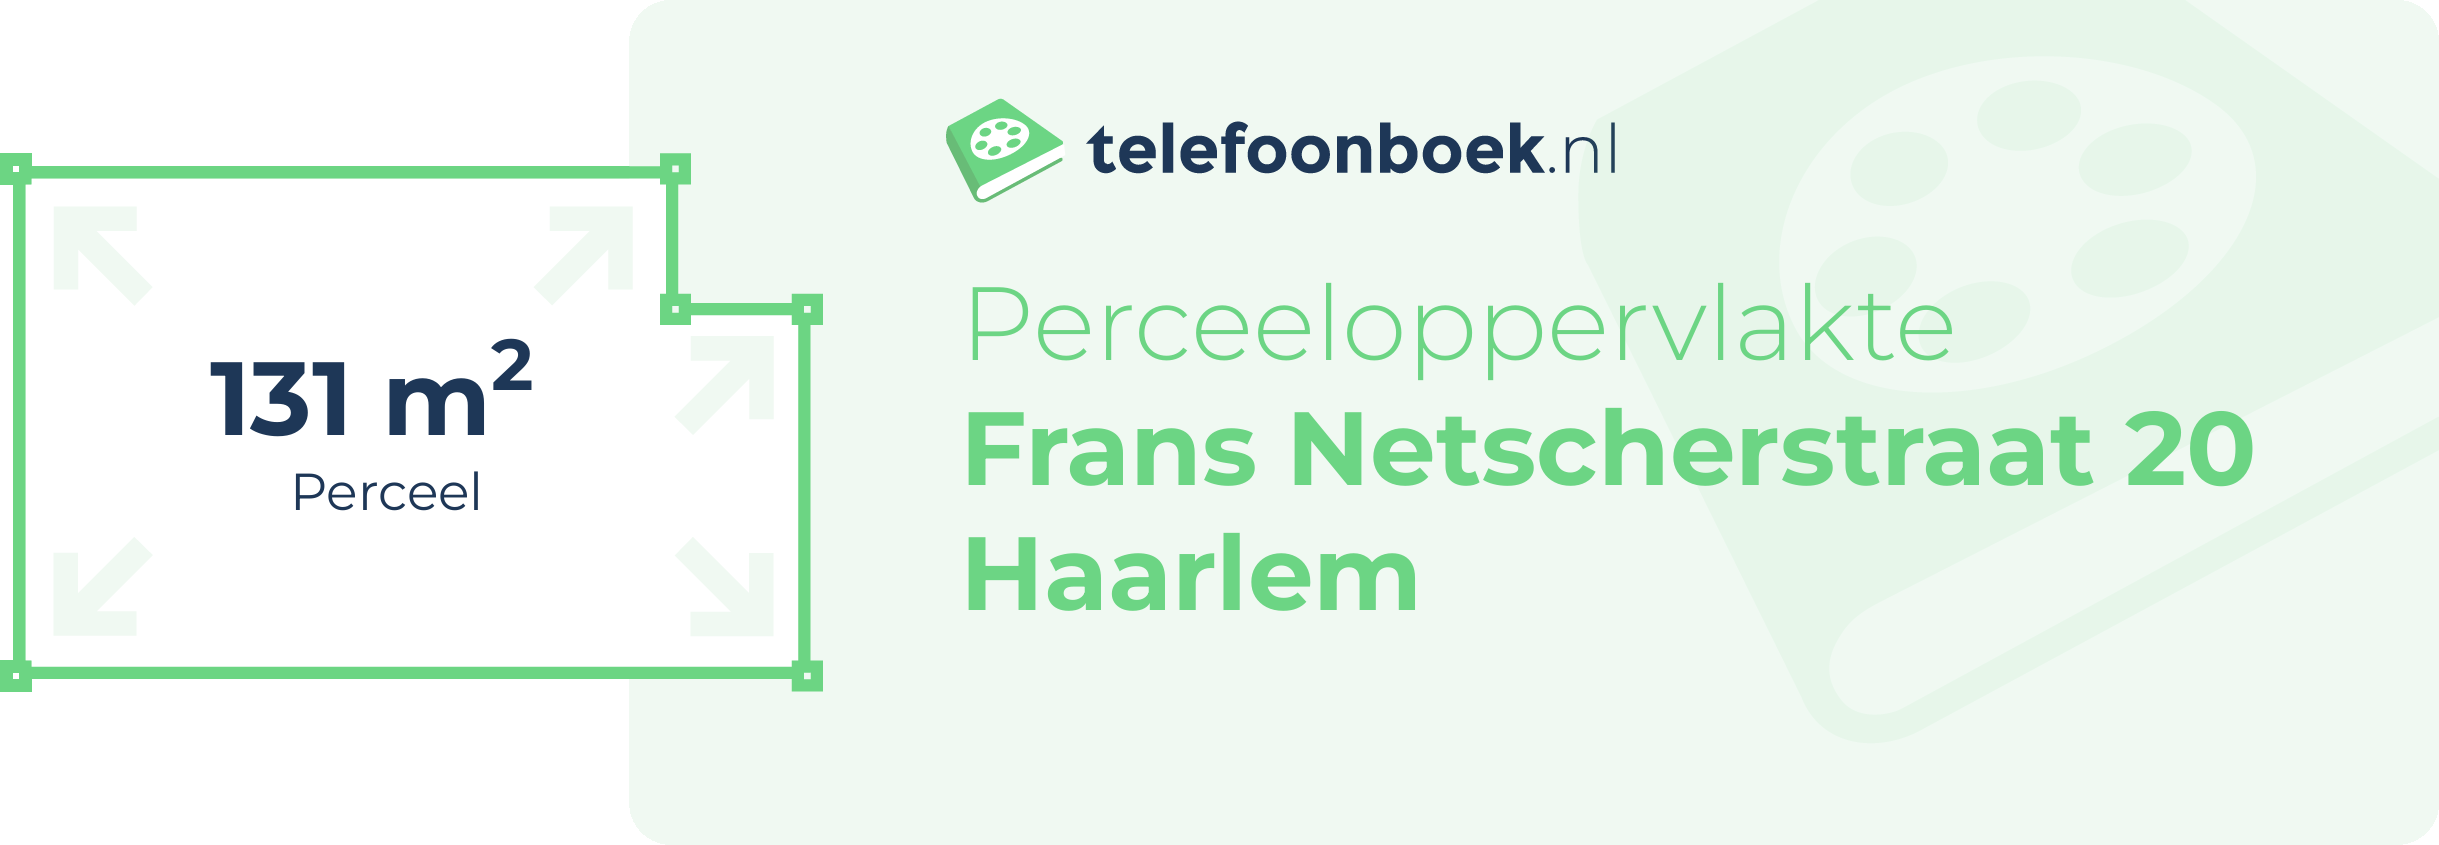 Perceeloppervlakte Frans Netscherstraat 20 Haarlem